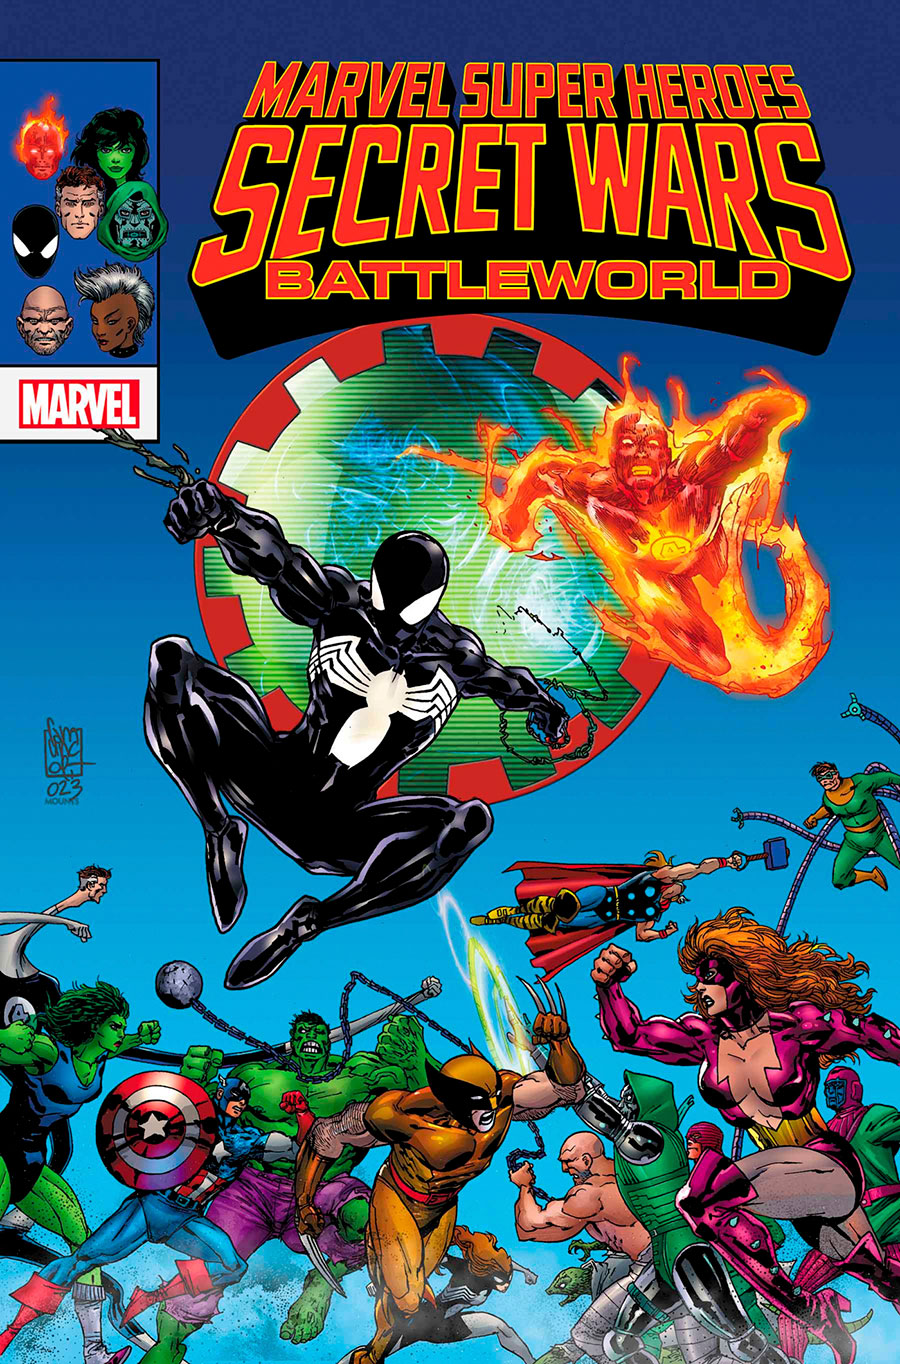 Marvel Super Heroes Secret Wars: Battleworld